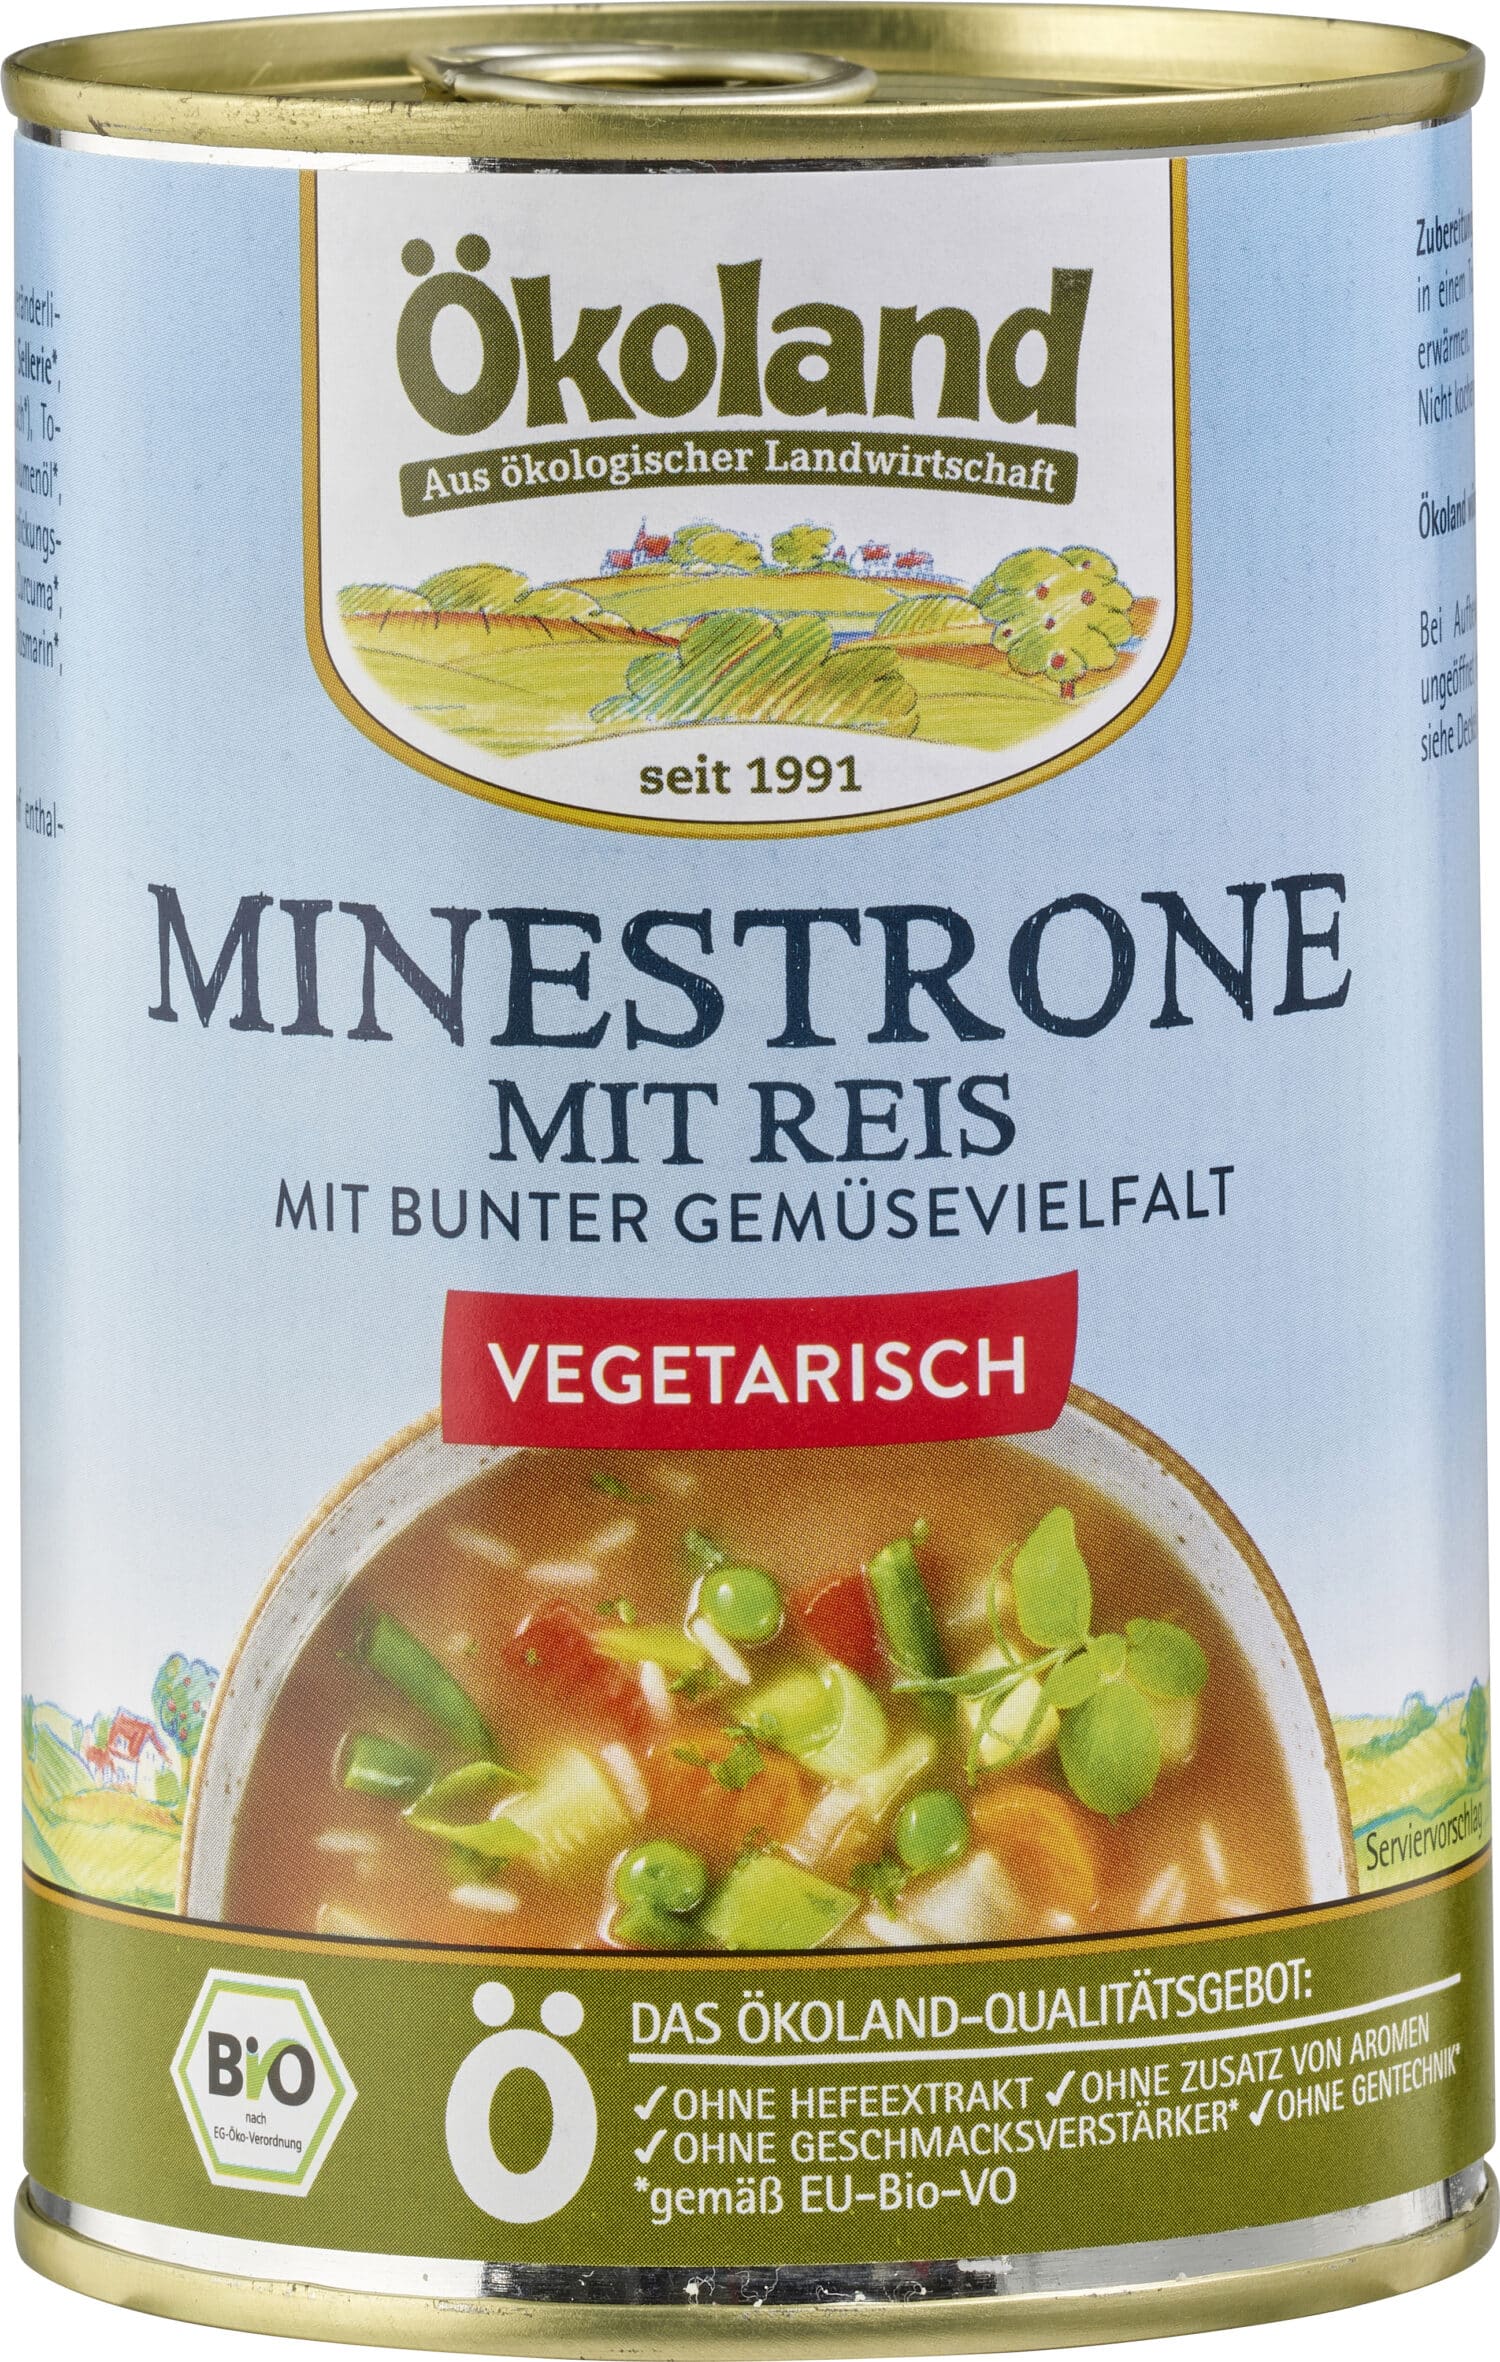 Minestrone mit Reis, vegetarisch